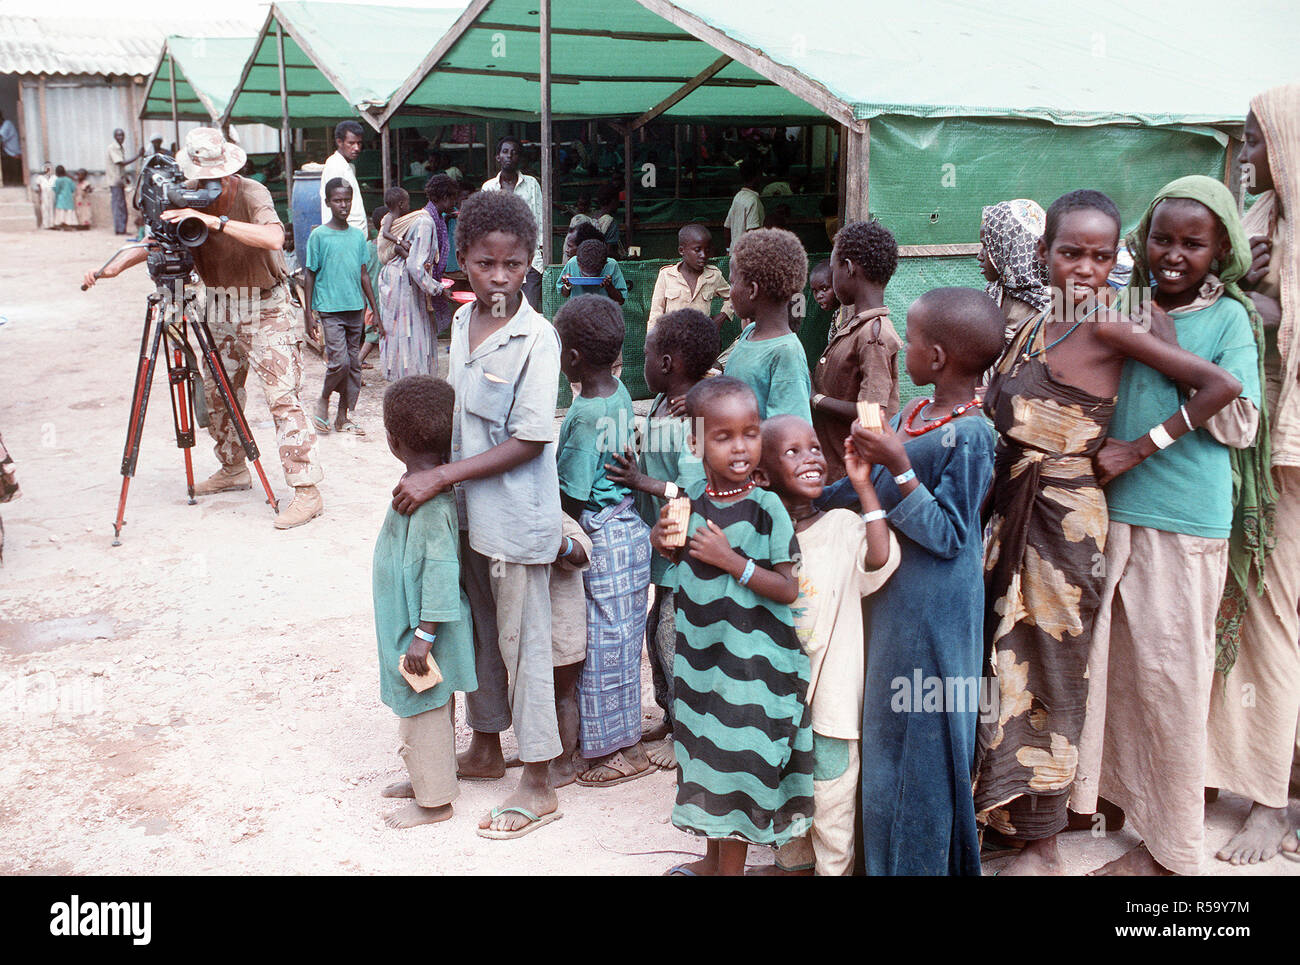 1993 - Jefe del fotógrafo Robert Sasek Mate videocintas somalíes alineando para una comida en el centro de alimentación de preocupación durante el esfuerzo de socorro multinacional operación RESTAURAR LA ESPERANZA. El centro es operado por el Irish Relief Organisation preocupación. Foto de stock